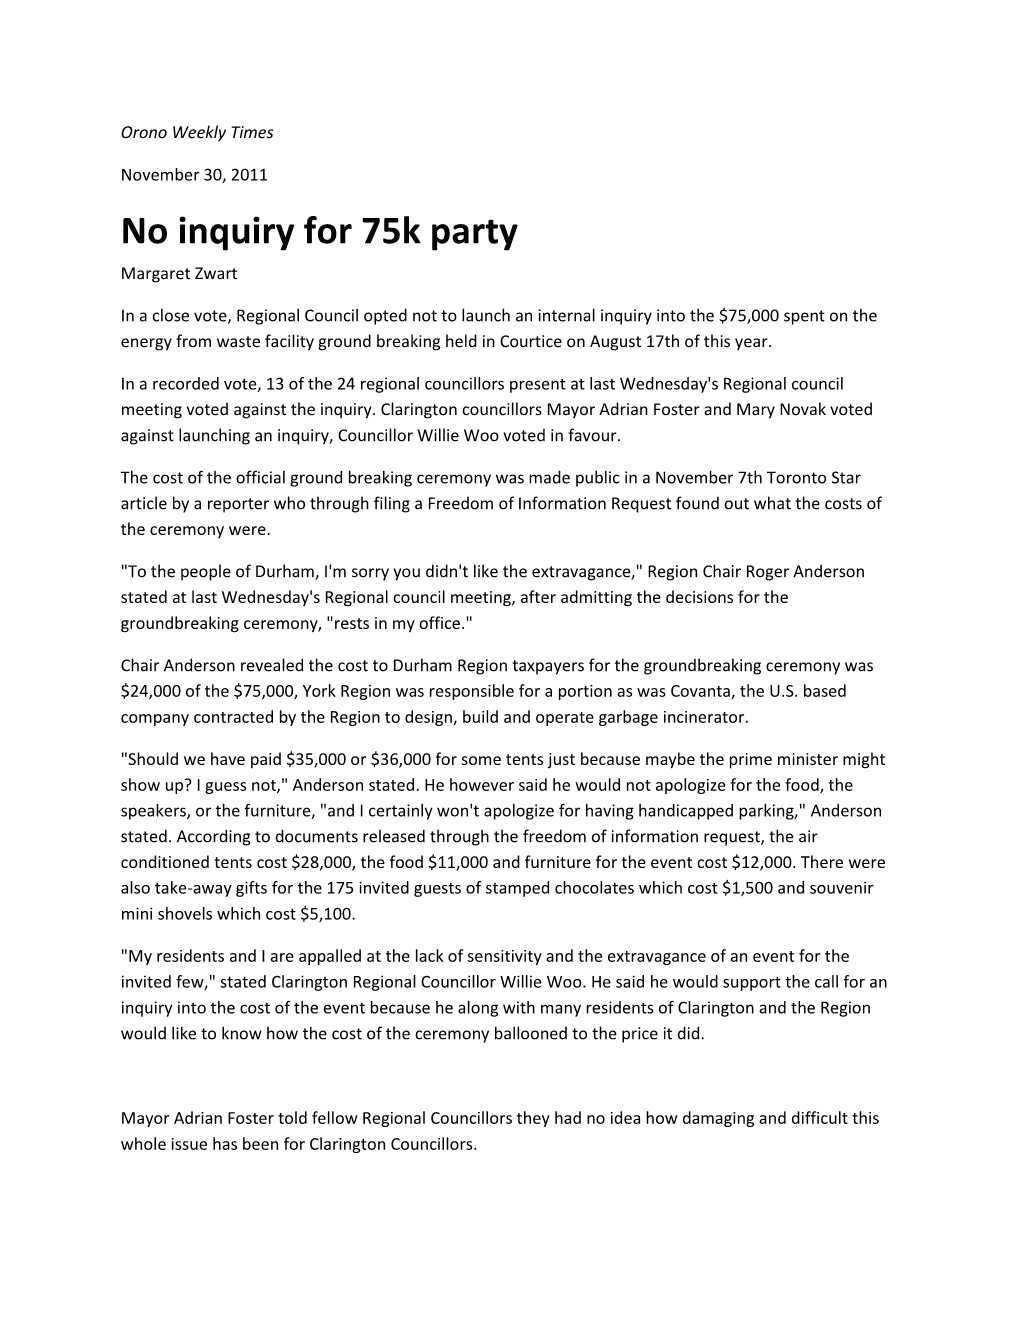 No Inquiry for 75K Party Margaret Zwart